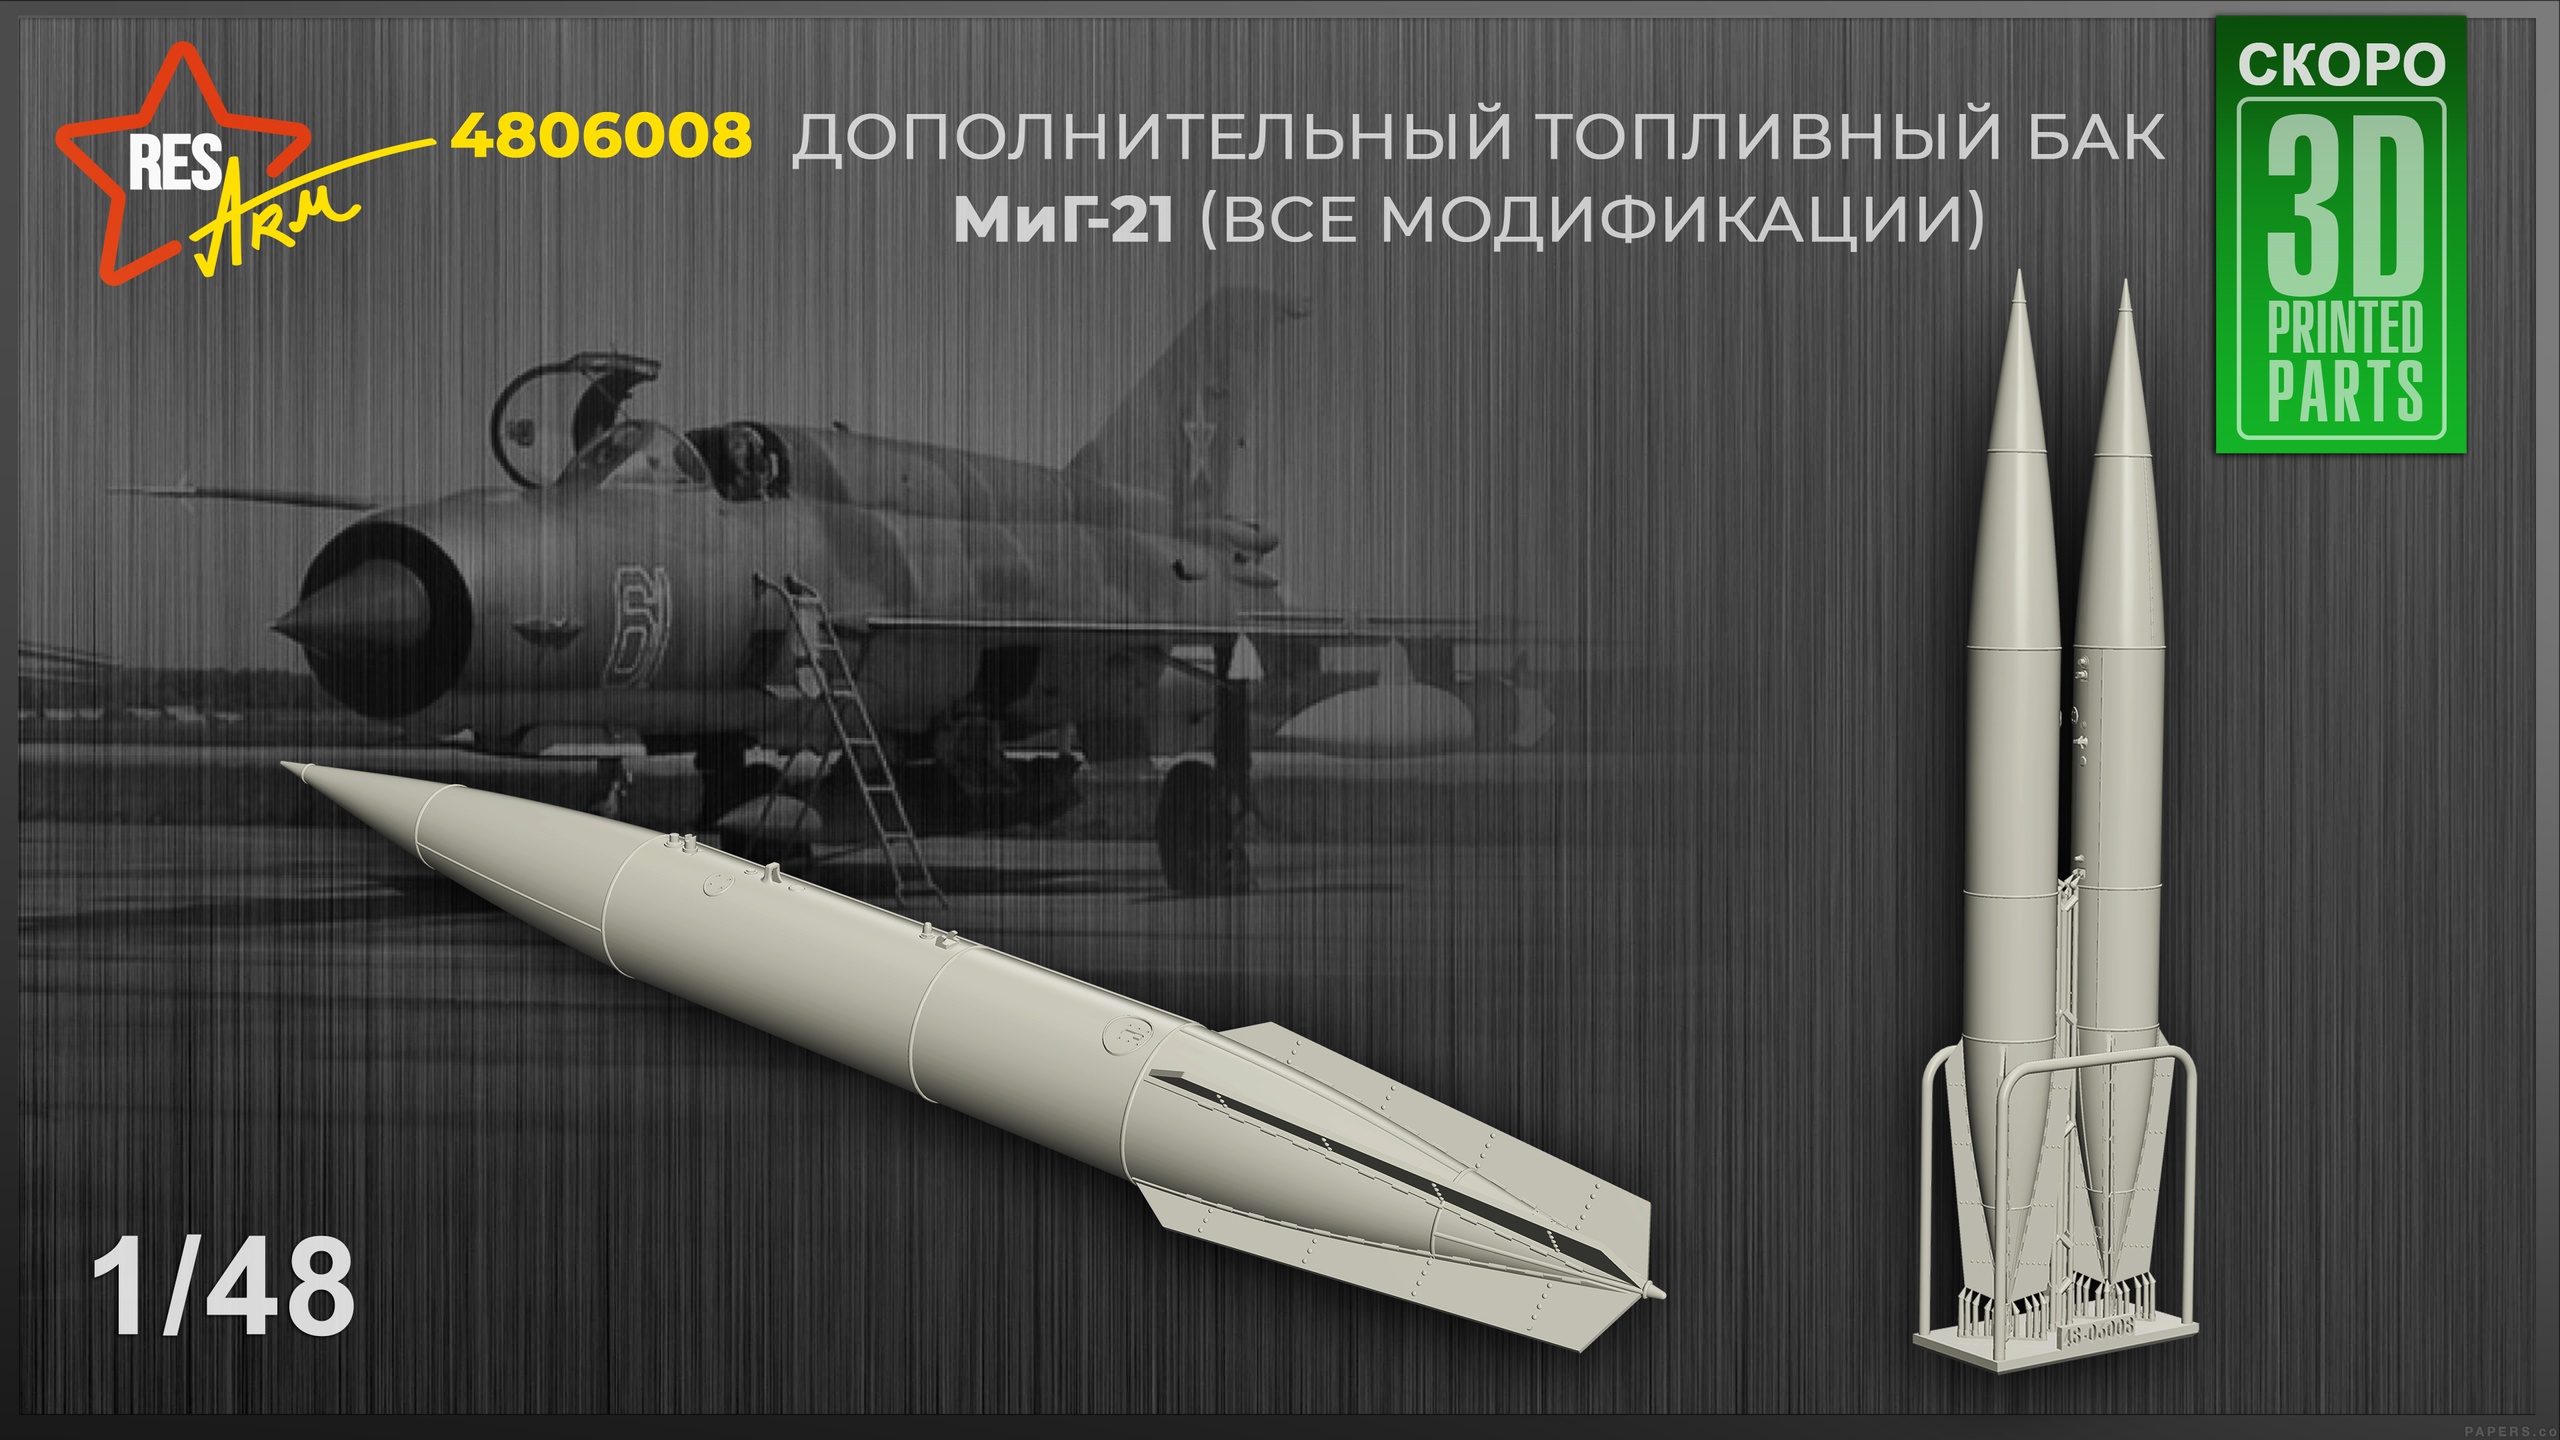 Дополнения из смолы 1/48 Дополнительные топливные баки МиГ-21 (все модификации) (RESArm)